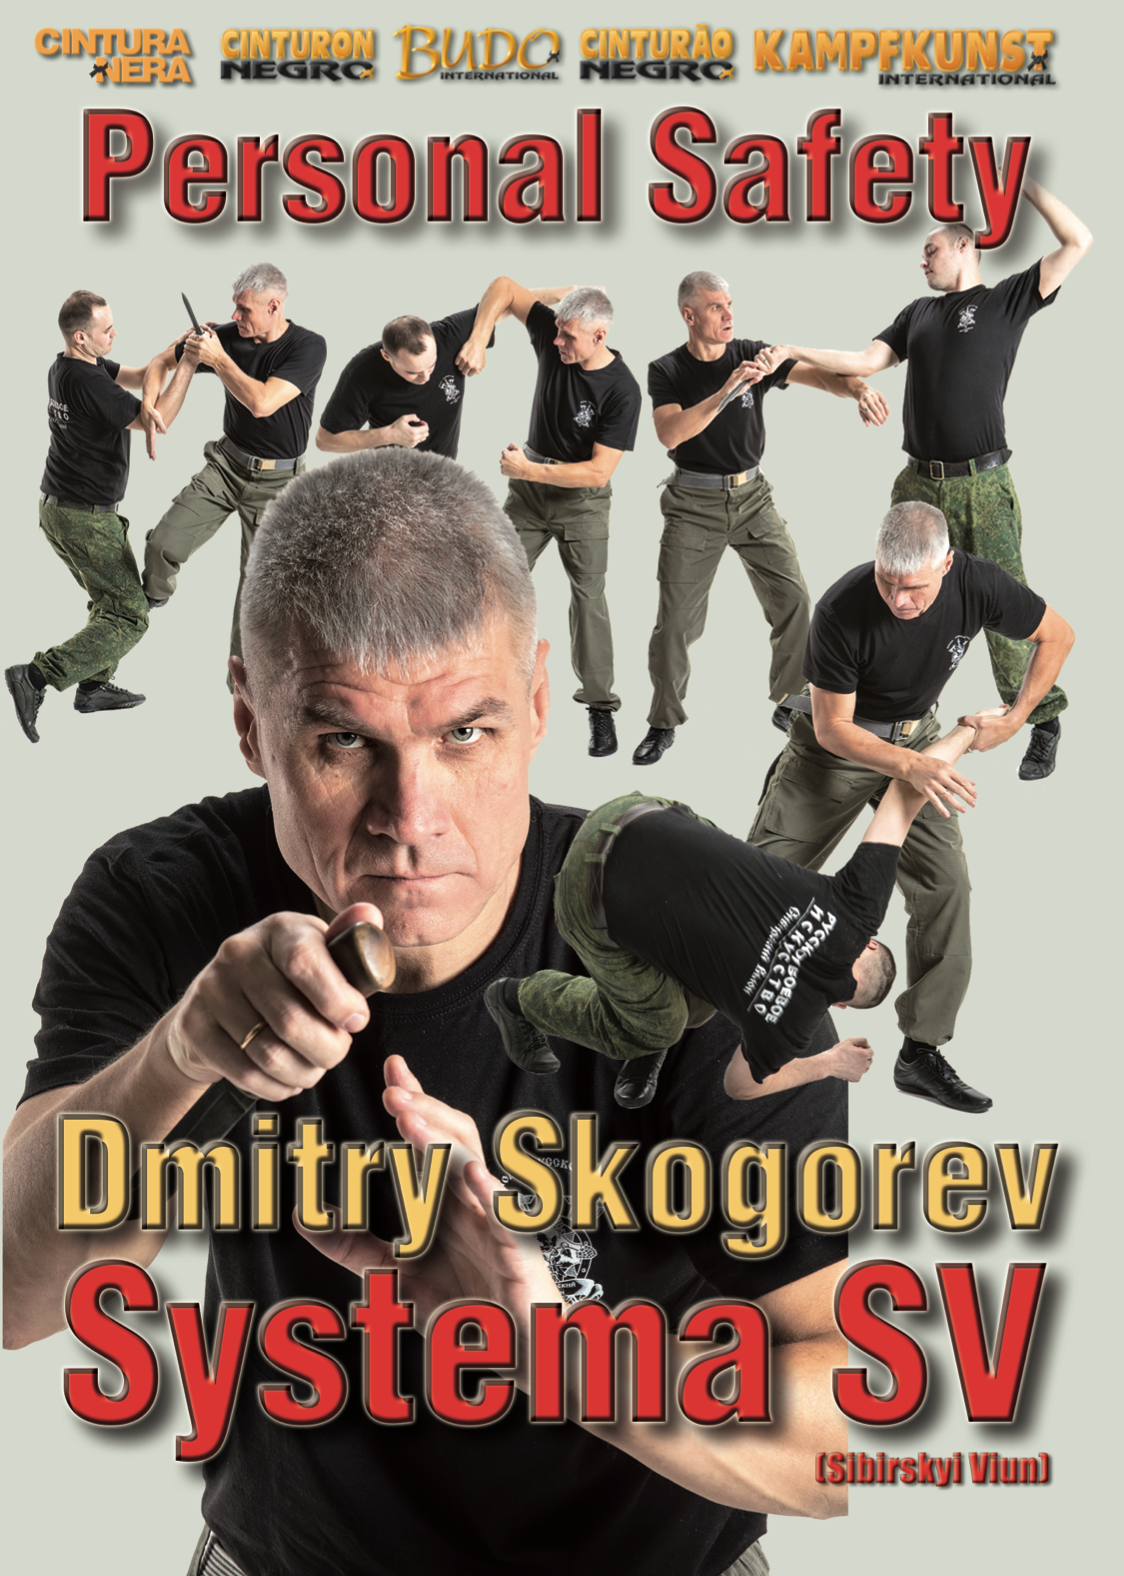 RMA Systema SV Self Defense with Daily Items DVD by Dmitry Skogorev 